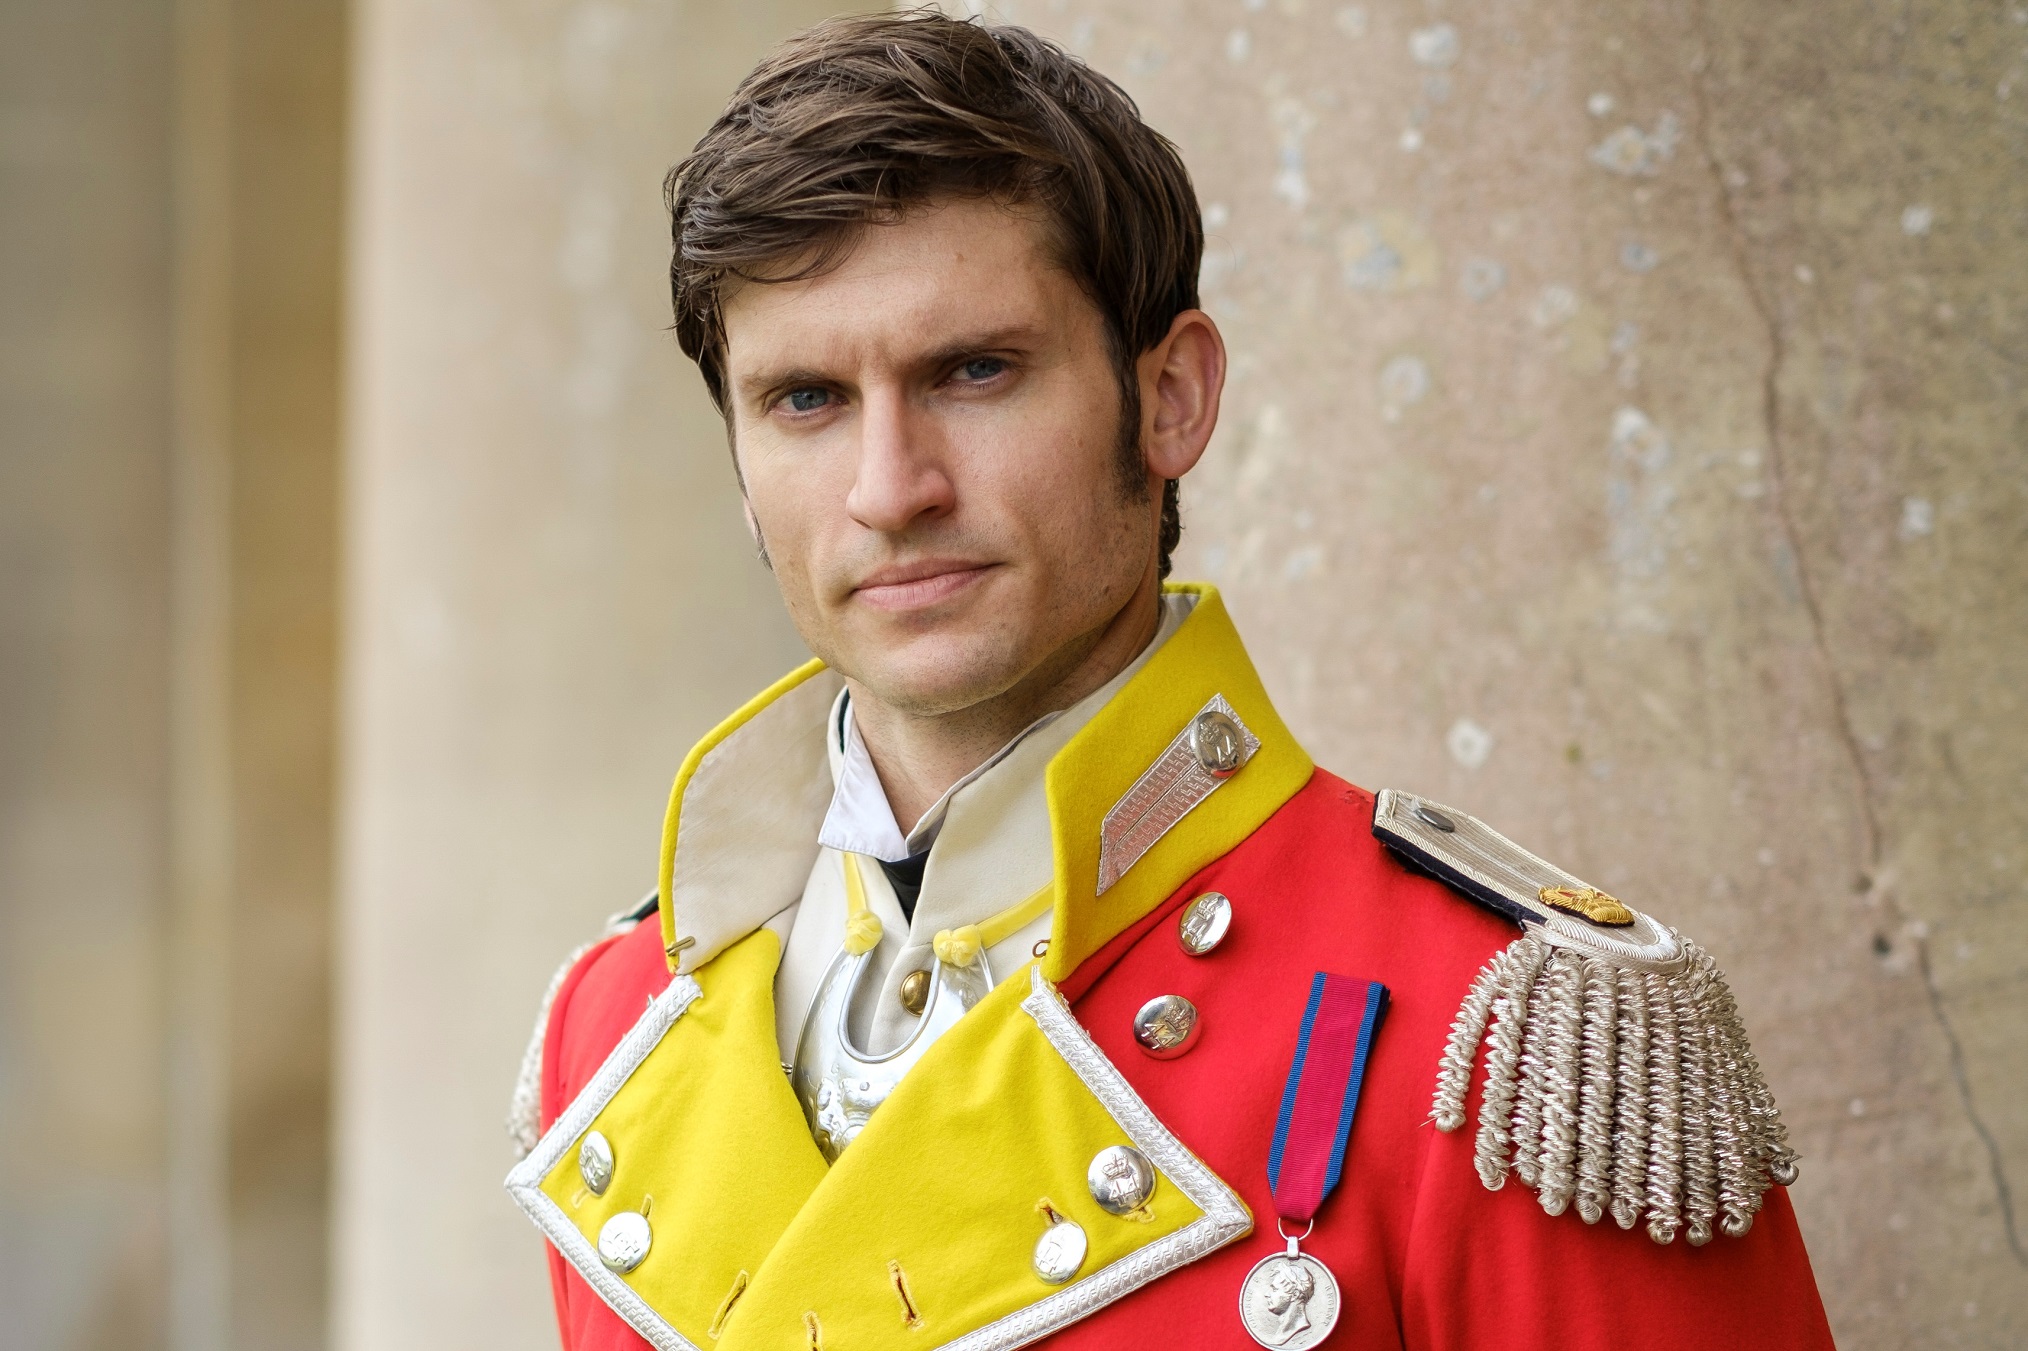 Tom Weston-Jones as Colonel Lennox in Sanditon - Season 2